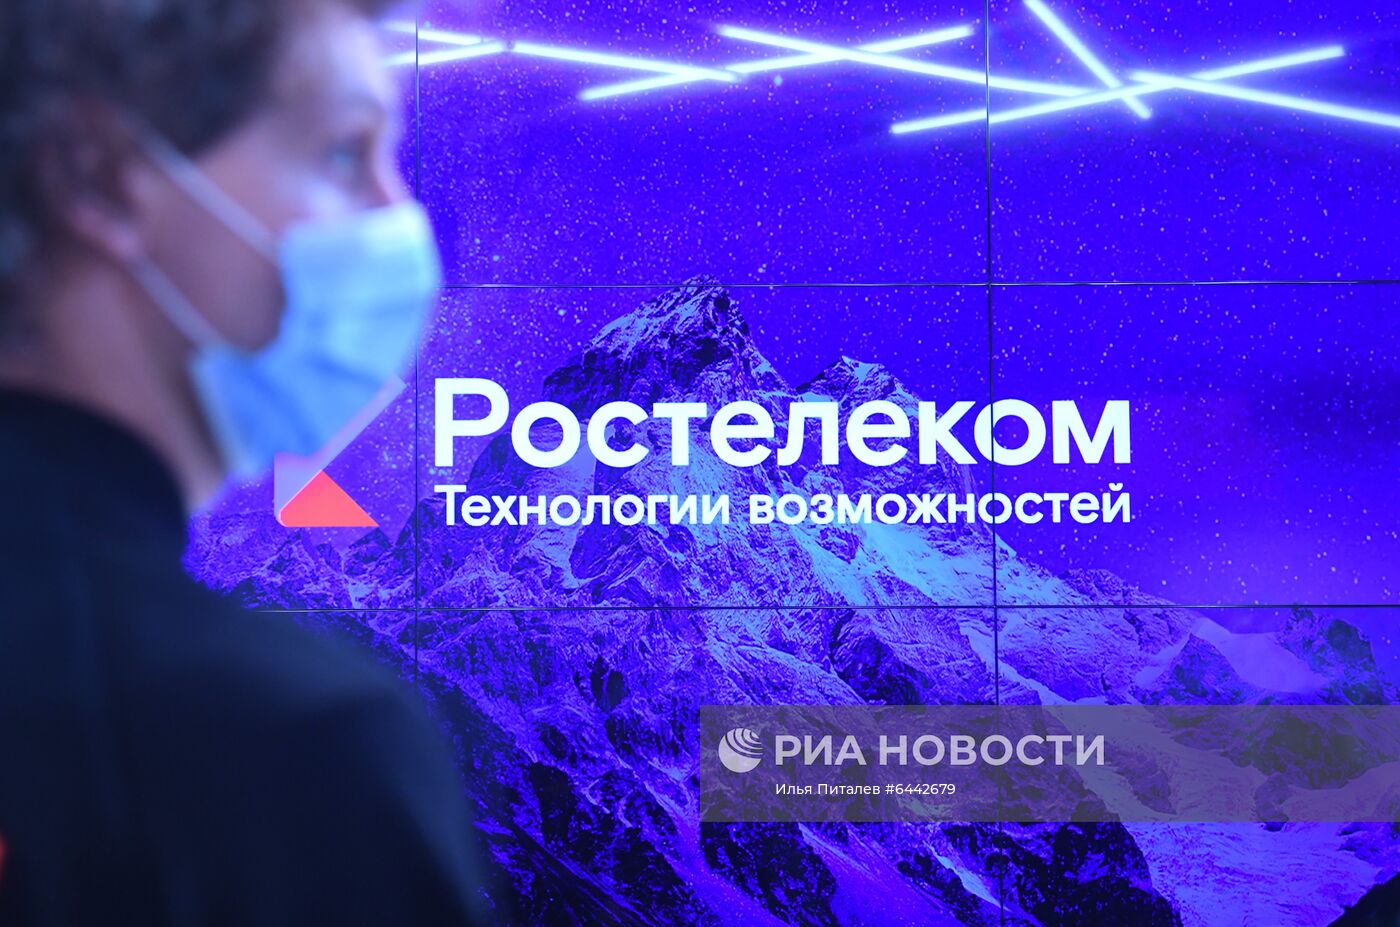 Открытие первого флагманского салона связи "Ростелекома" в Москве